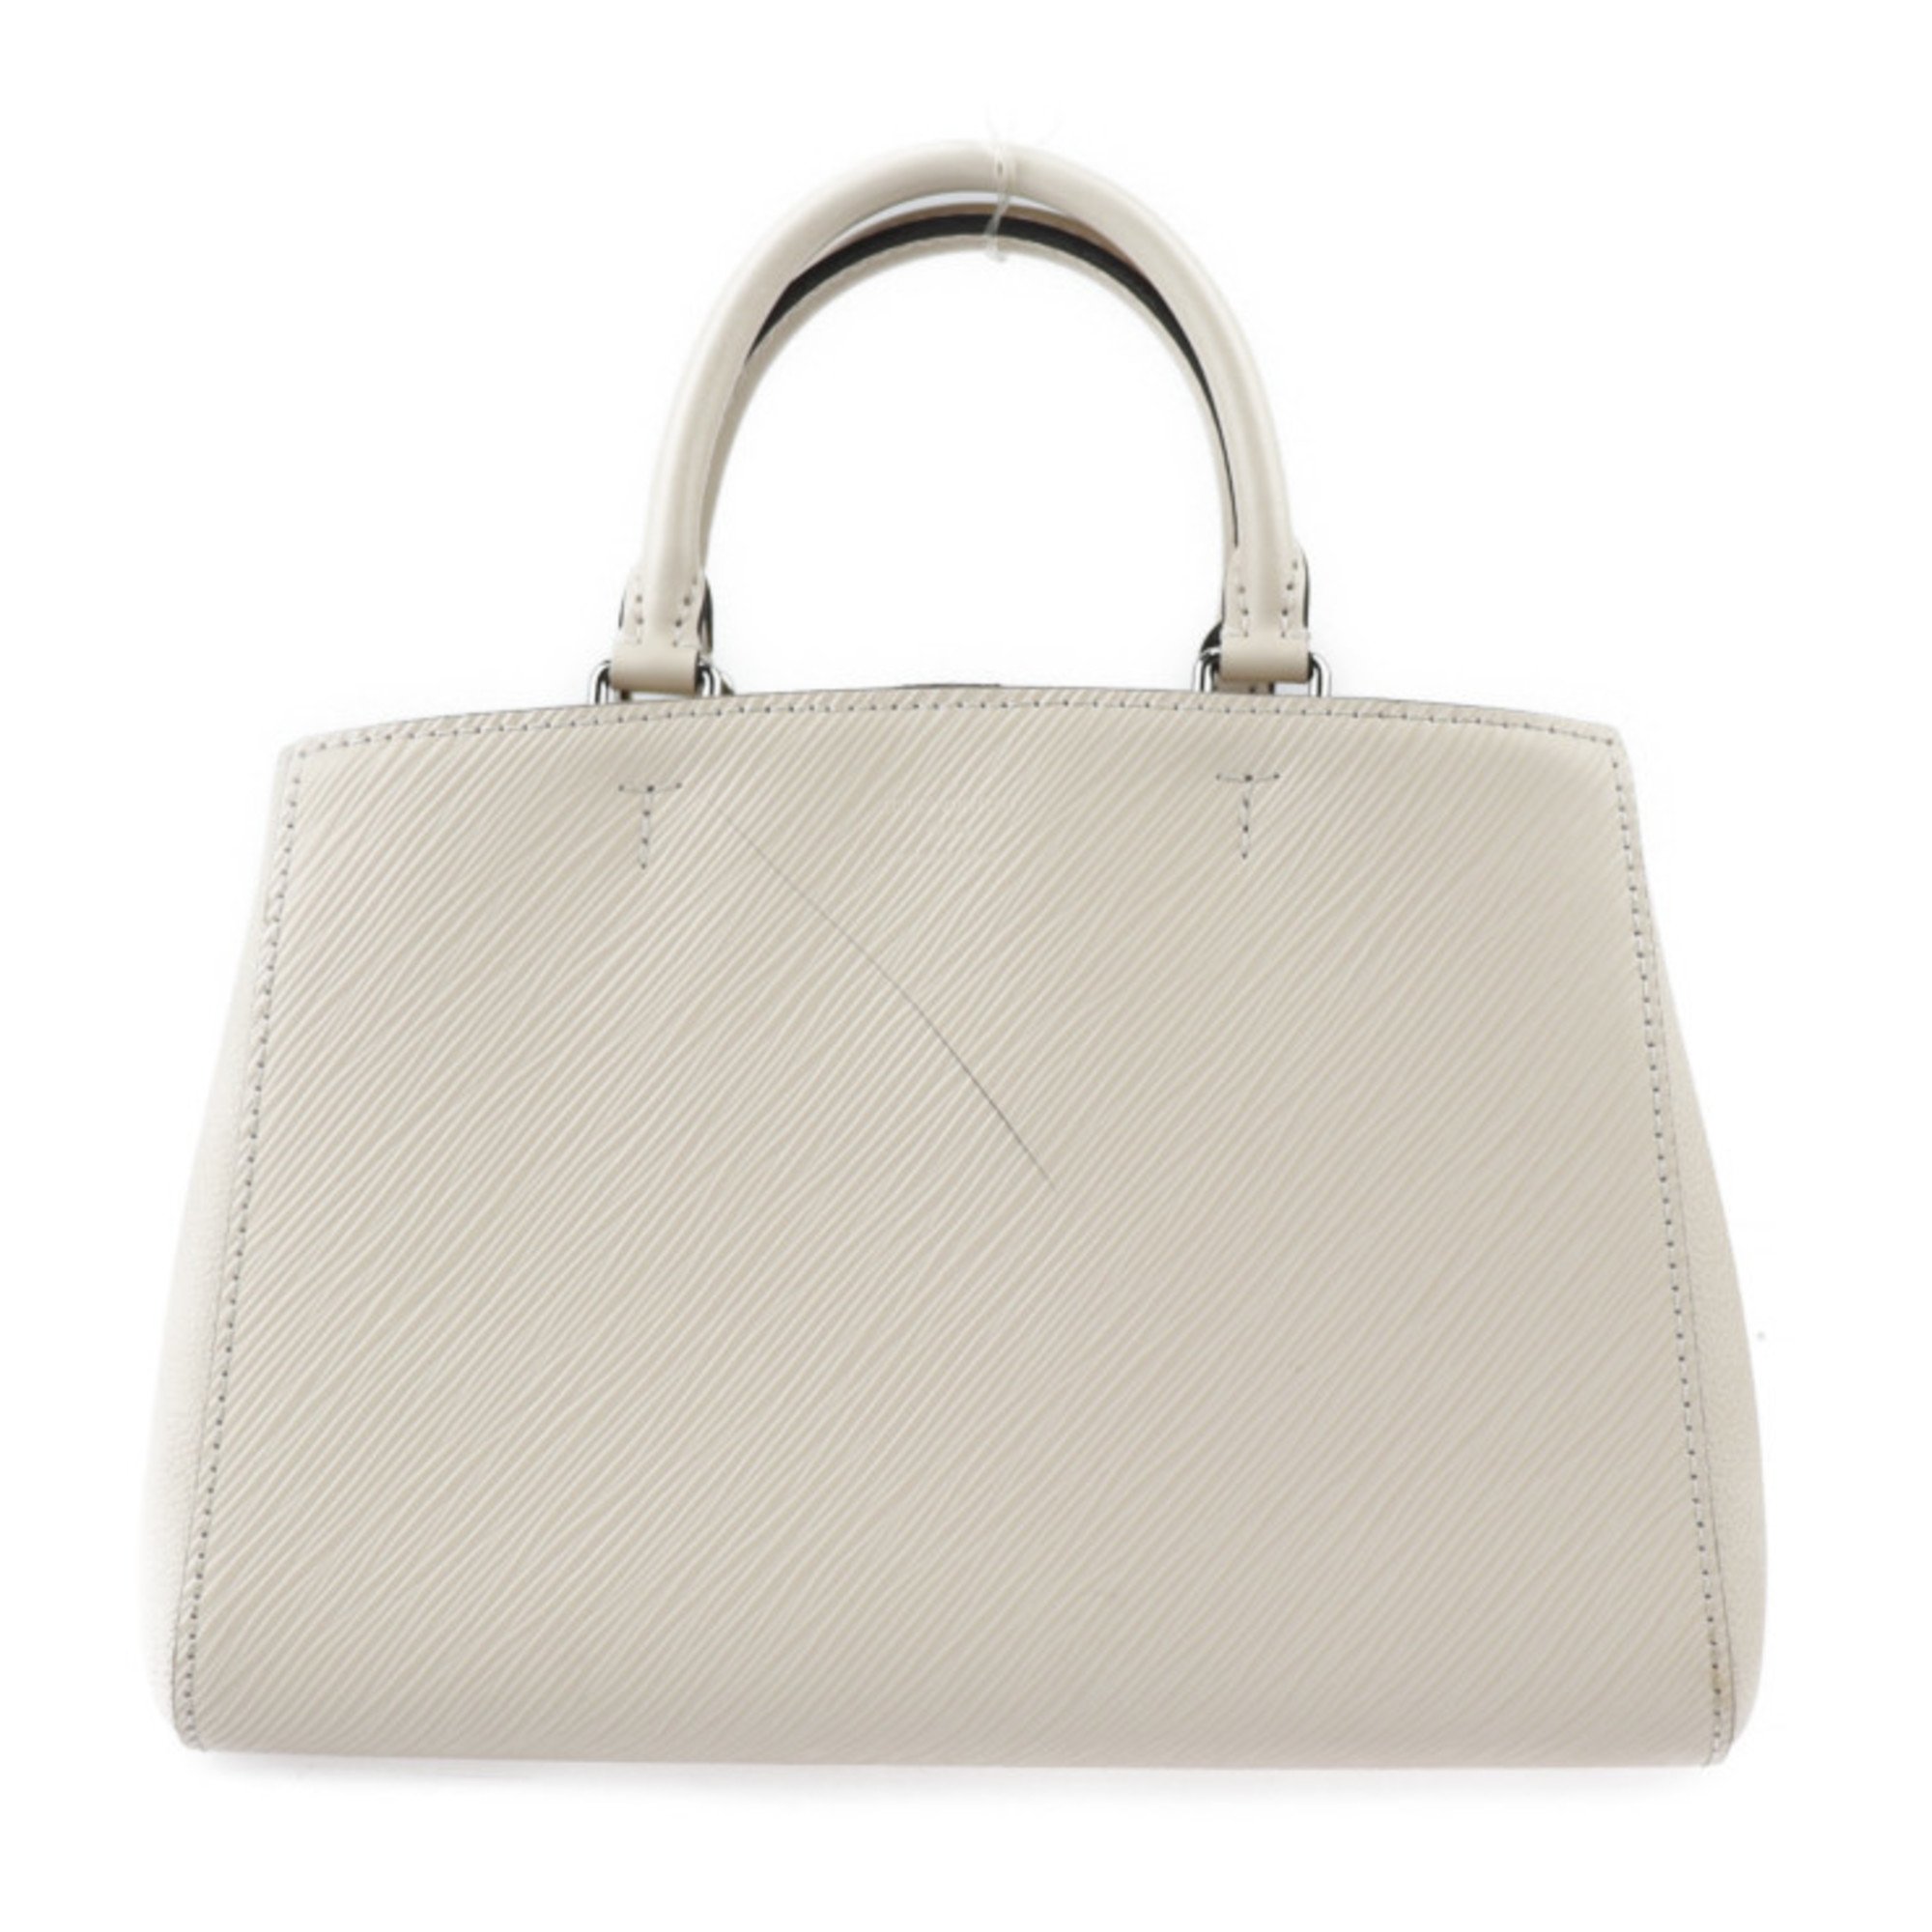 LOUIS VUITTON Louis Vuitton Marel Tote BB Handbag M20520 Epi Leather Quartz Silver Hardware 2WAY Shoulder Bag